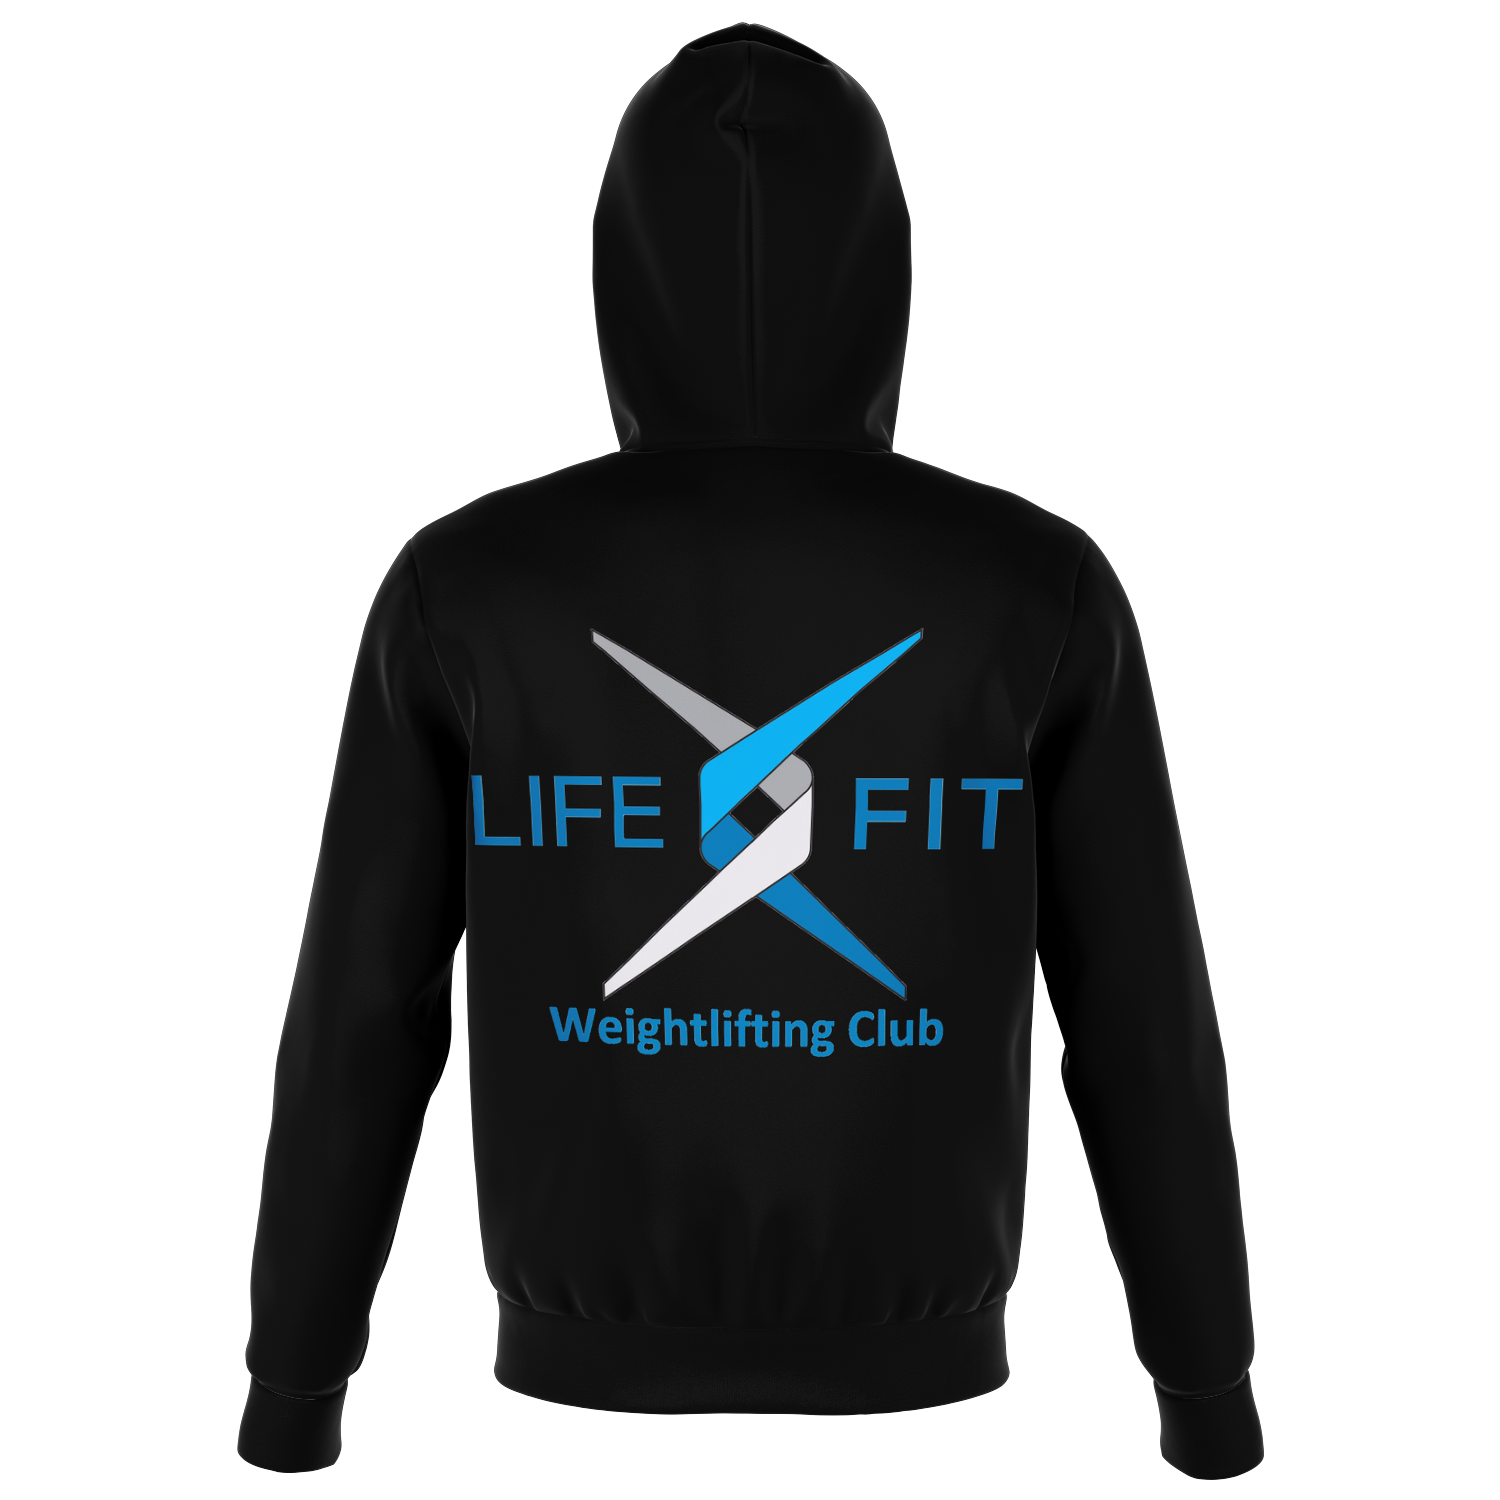 Lifefit Weightlifting club Zip Hoodie